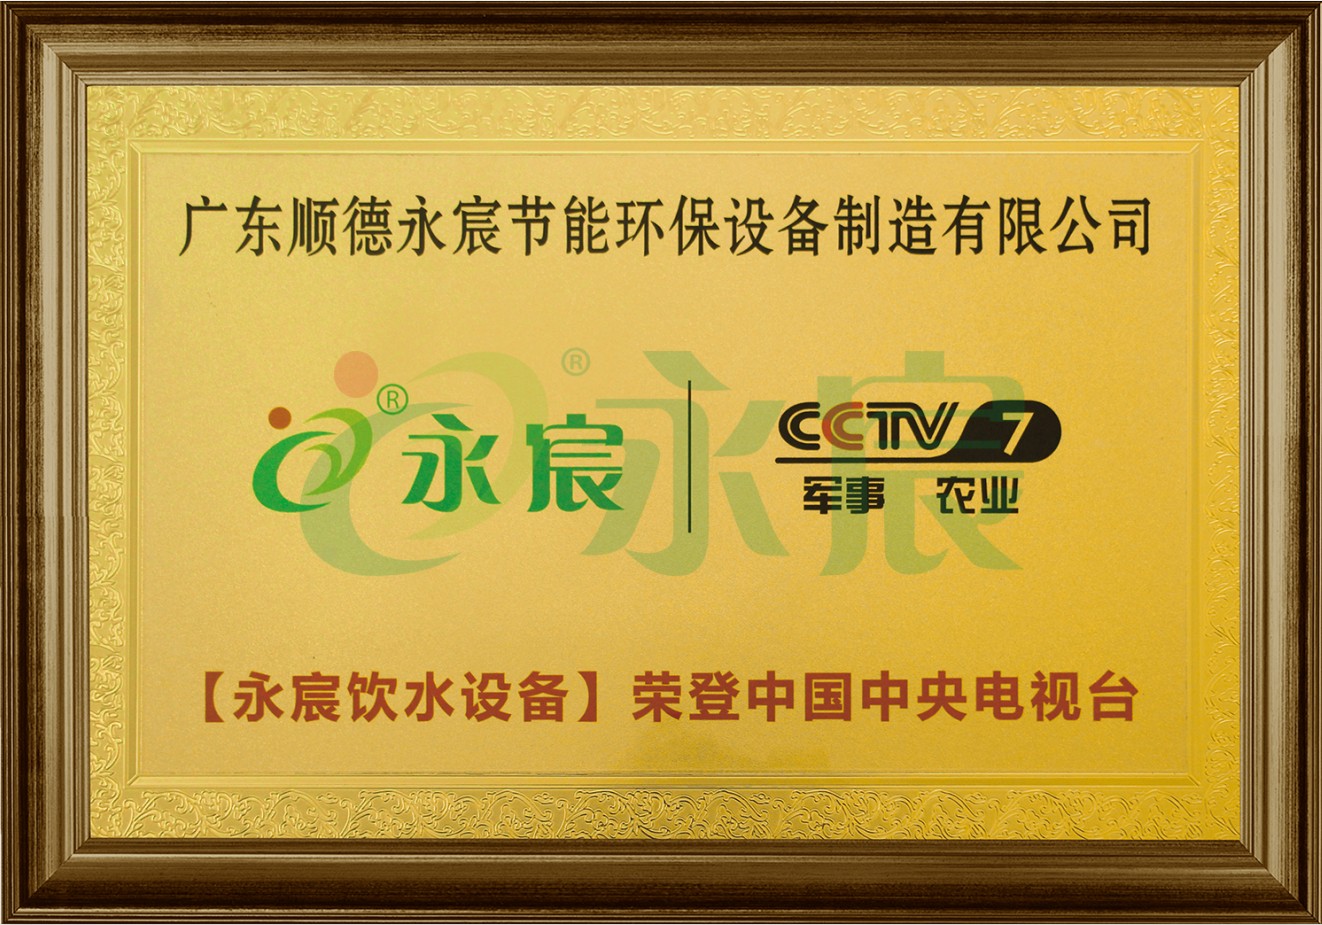 CCTV7 央視展播品牌